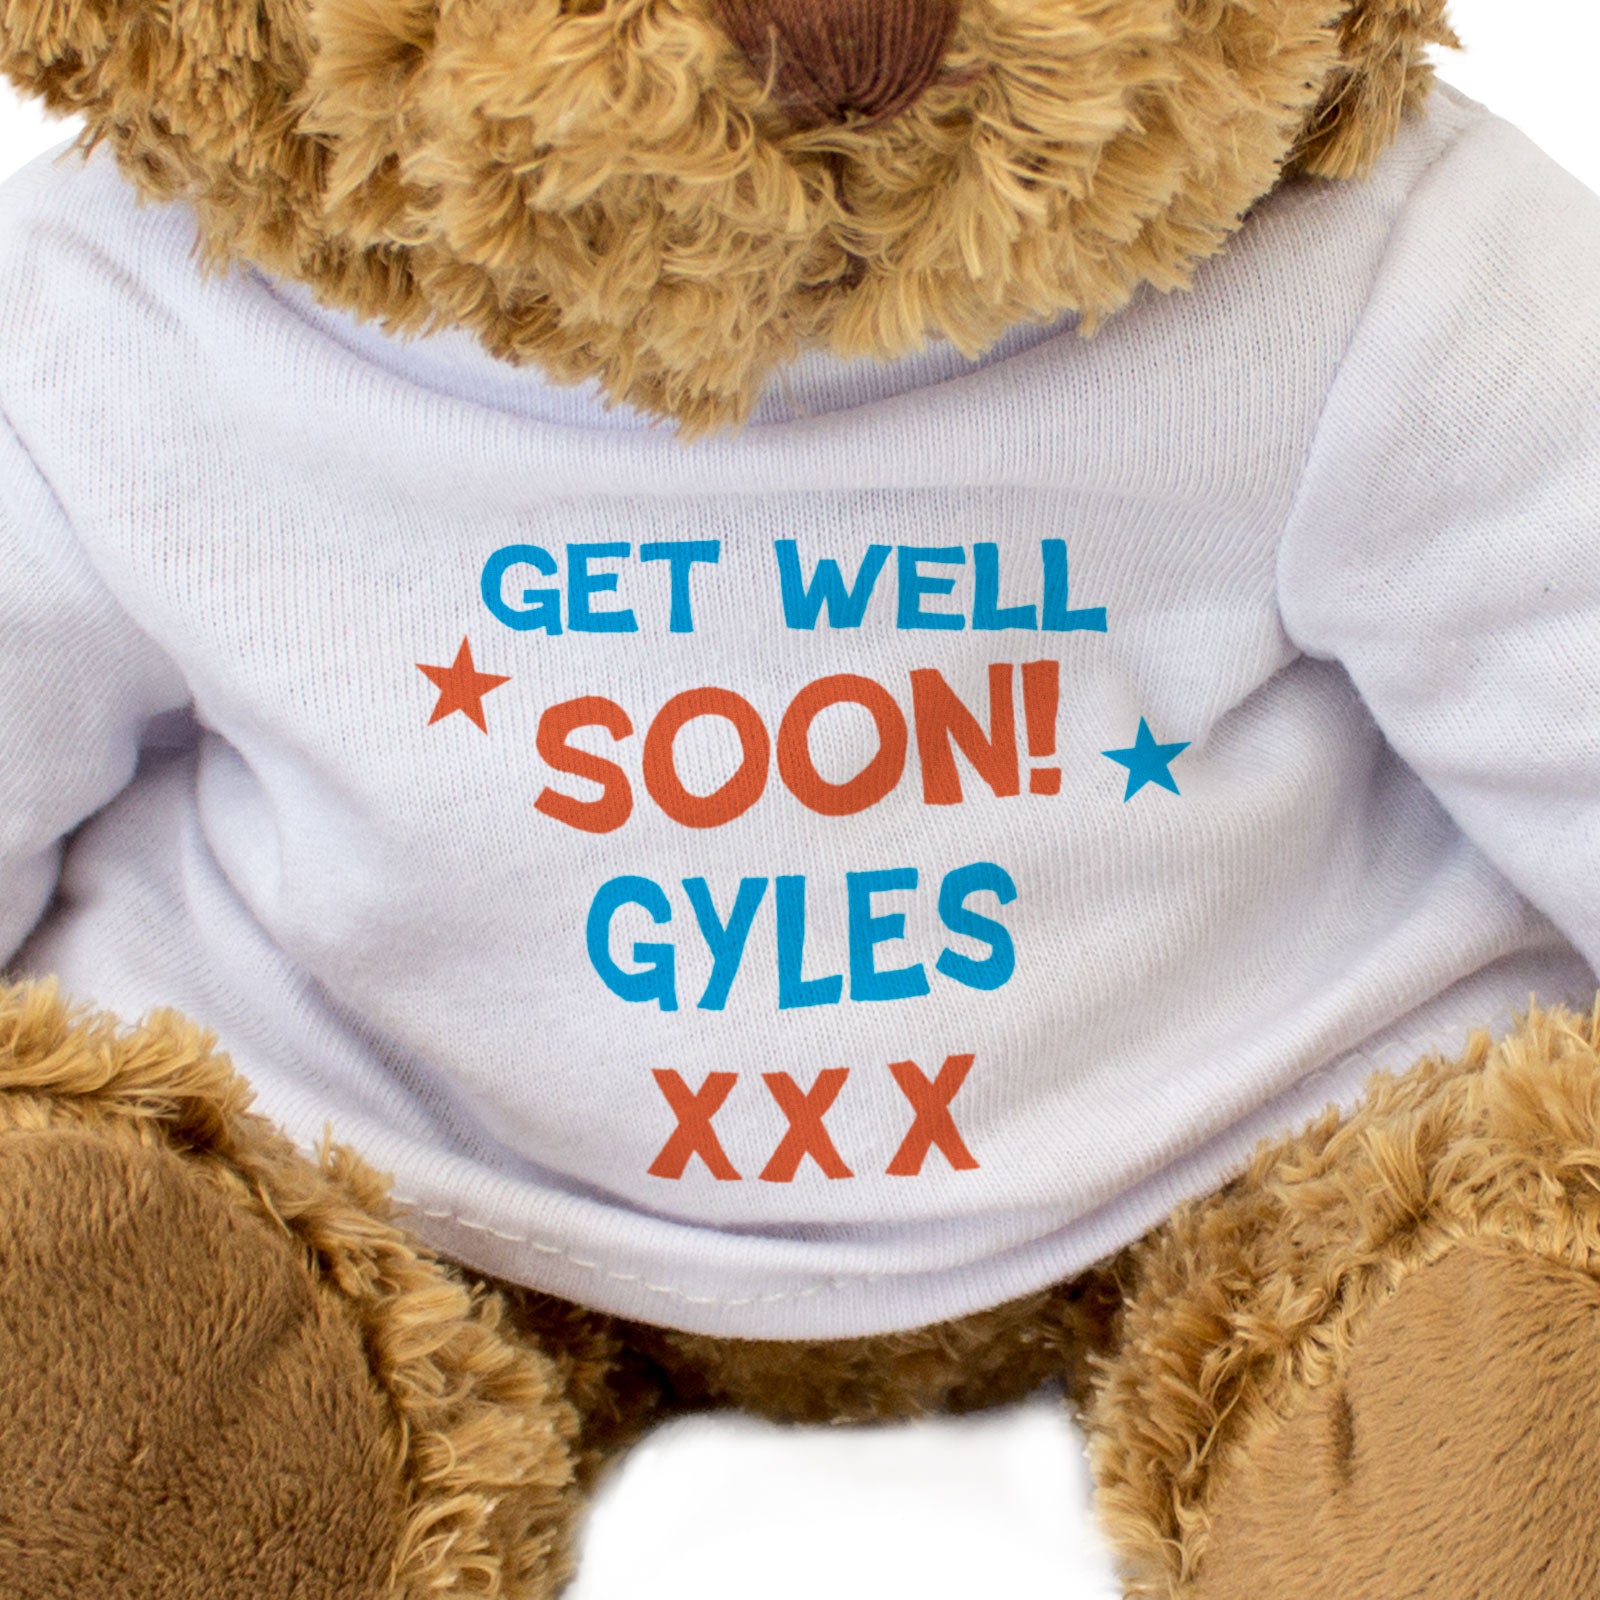 Get Well Soon Gyles - Teddy Bear